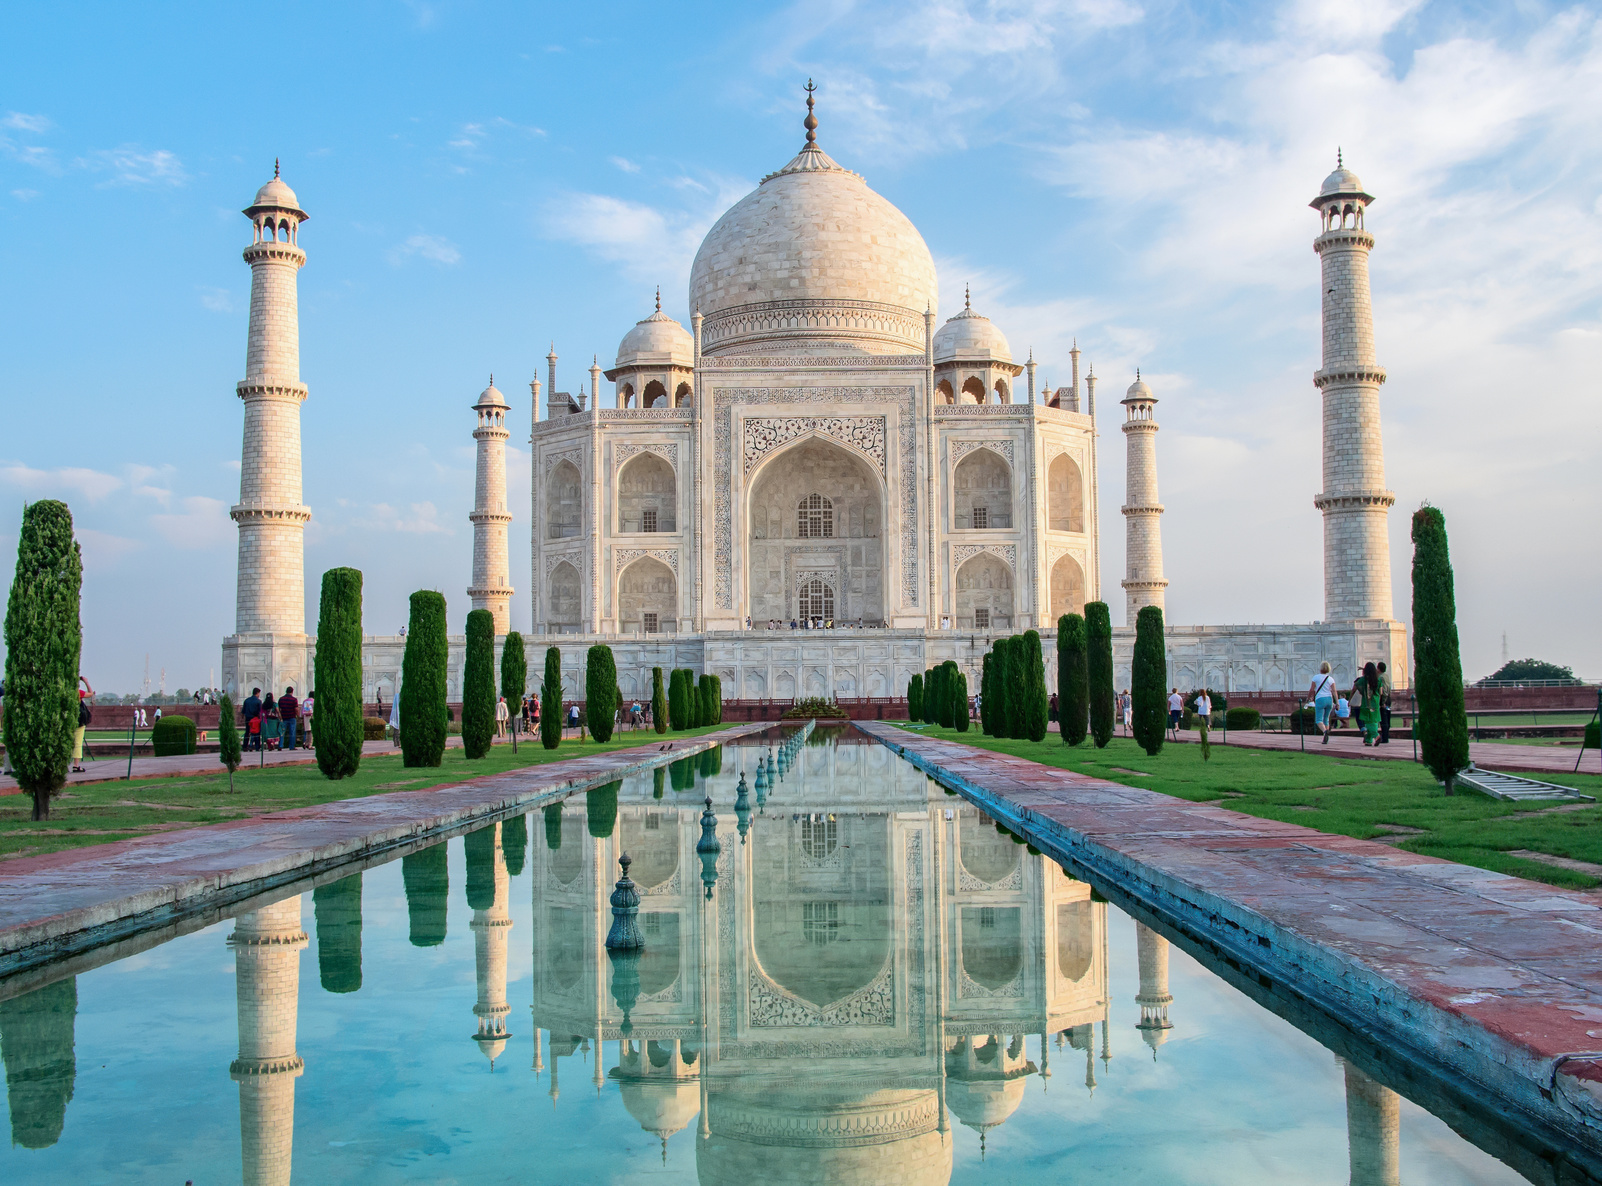 Inde : Taj Mahal : les travaux de rénovation s'éternisent - Routard.com